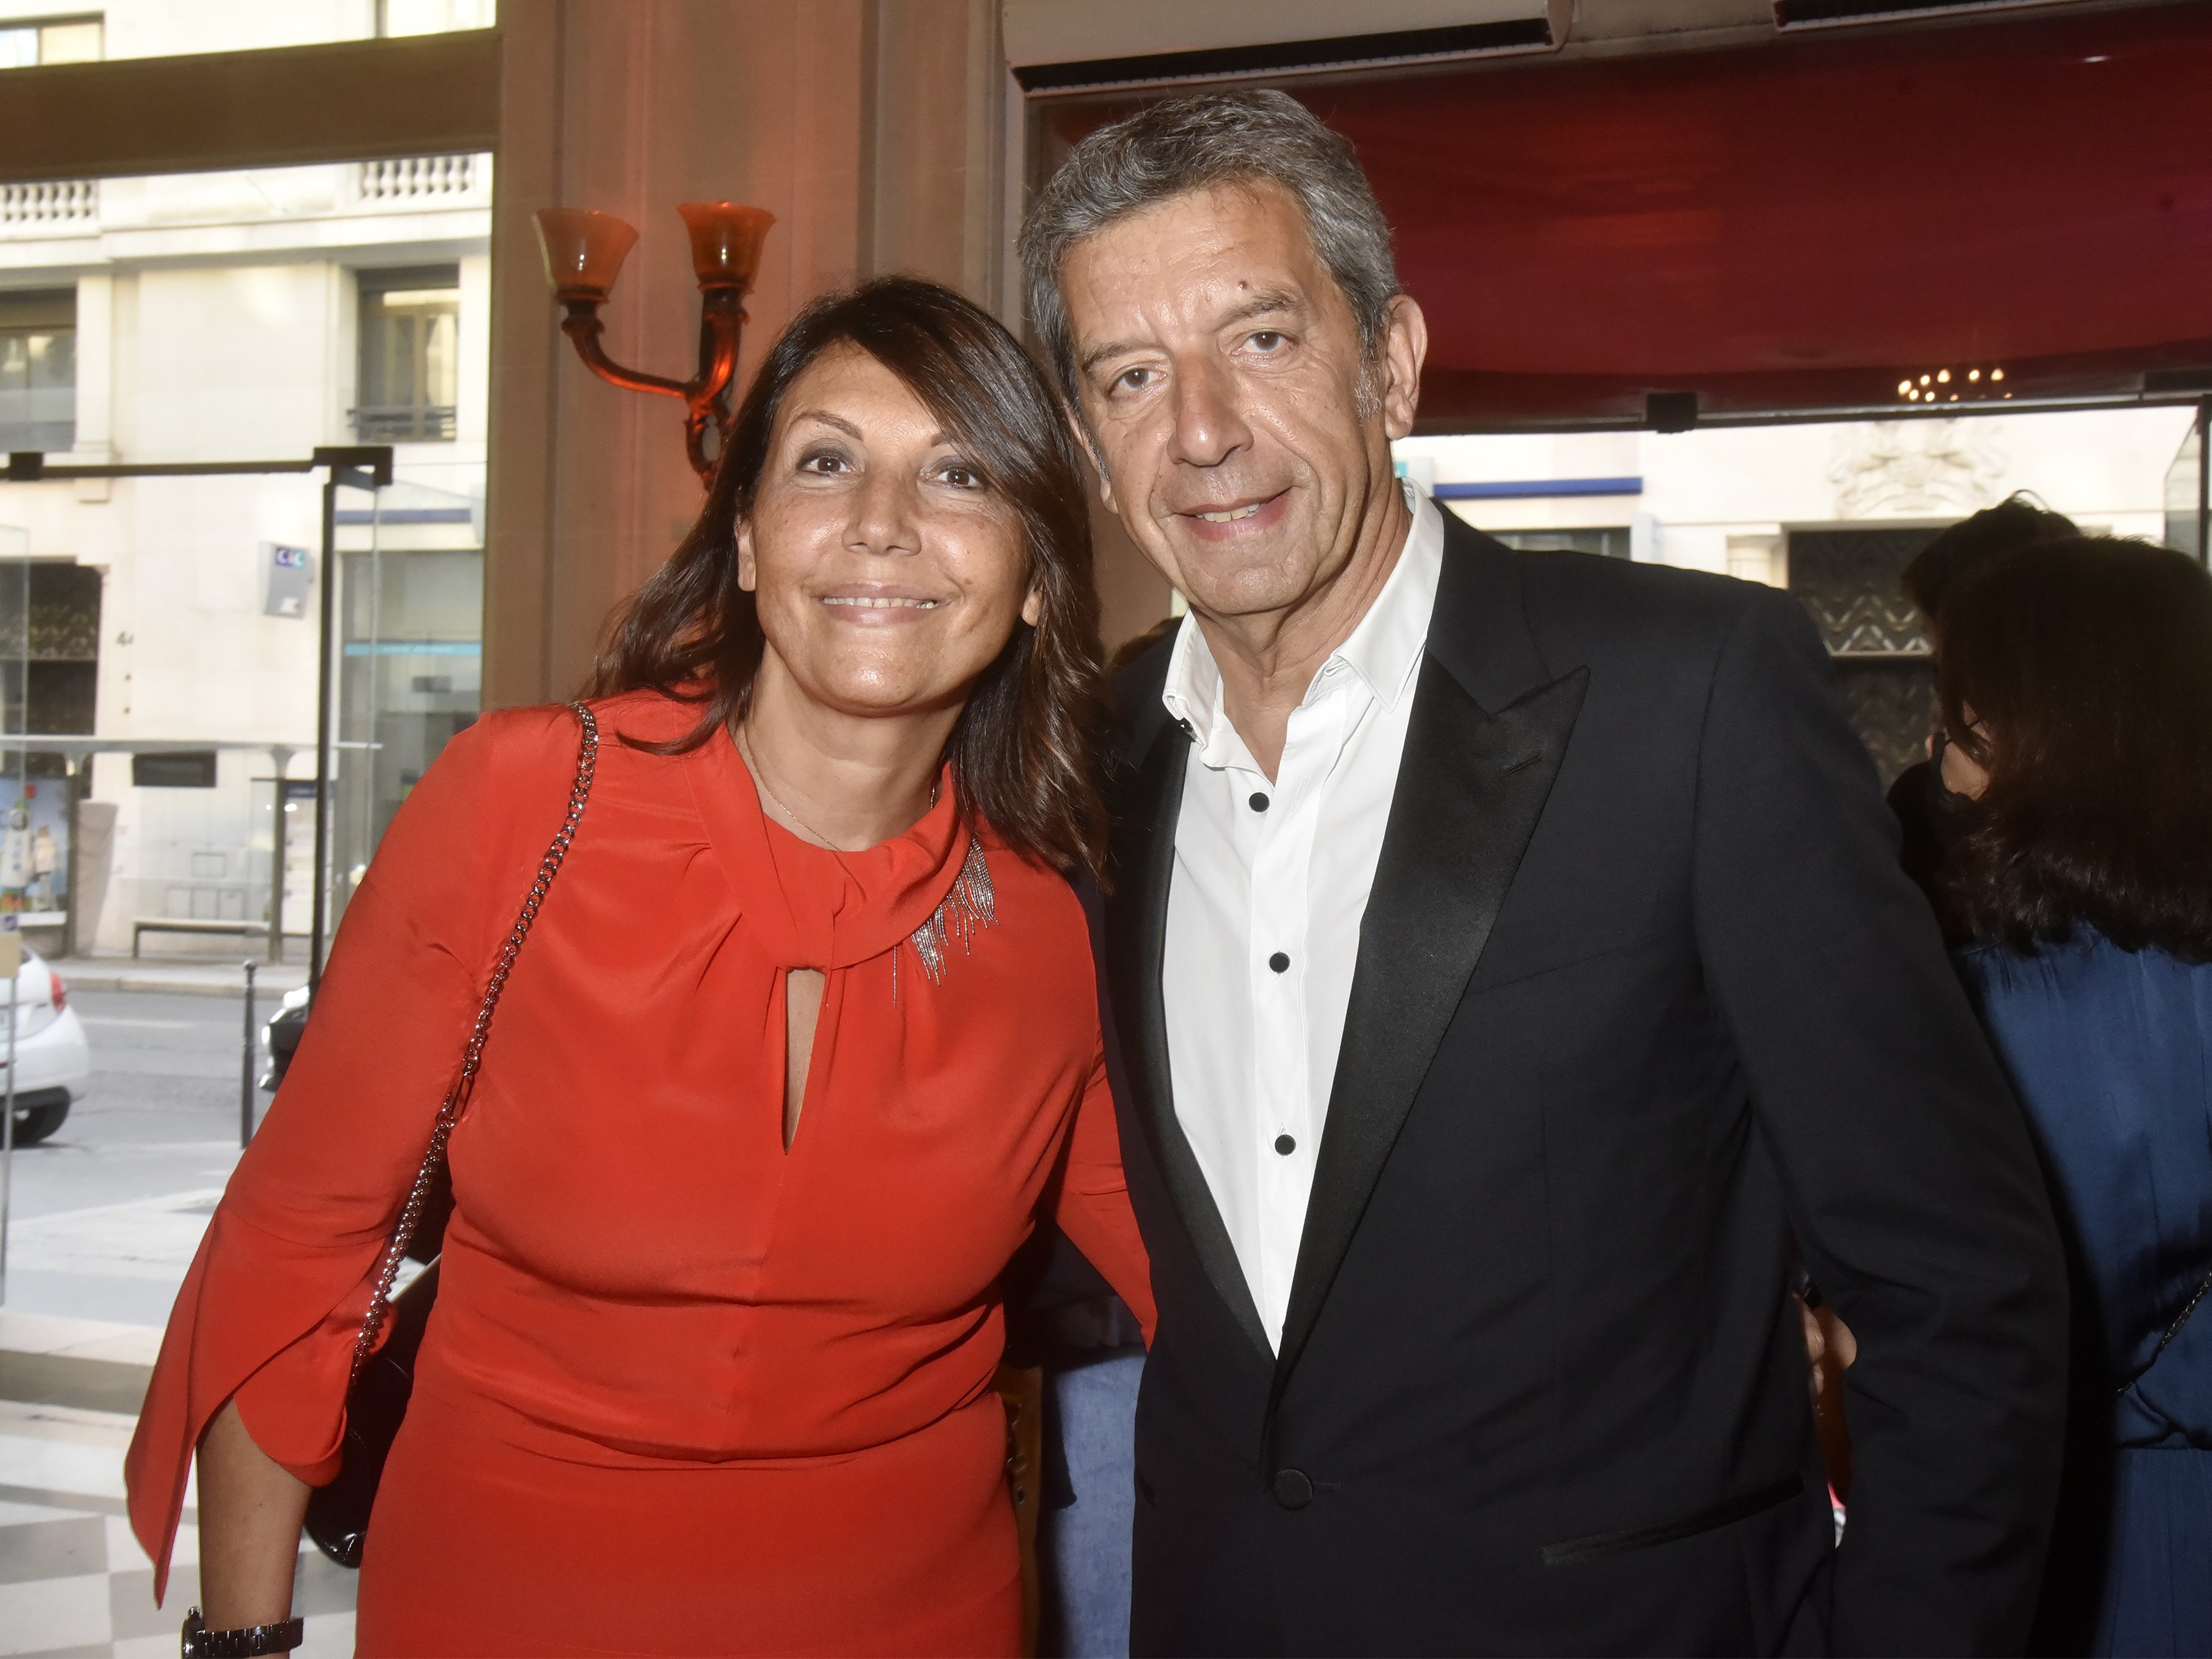 Michel Cymes et son épouse Nathalie Cymes assistent au "Gala Enfance Majuscule" à la Salle Gaveau le 15 juin 2021 à Paris, France. | Photo : Getty Images